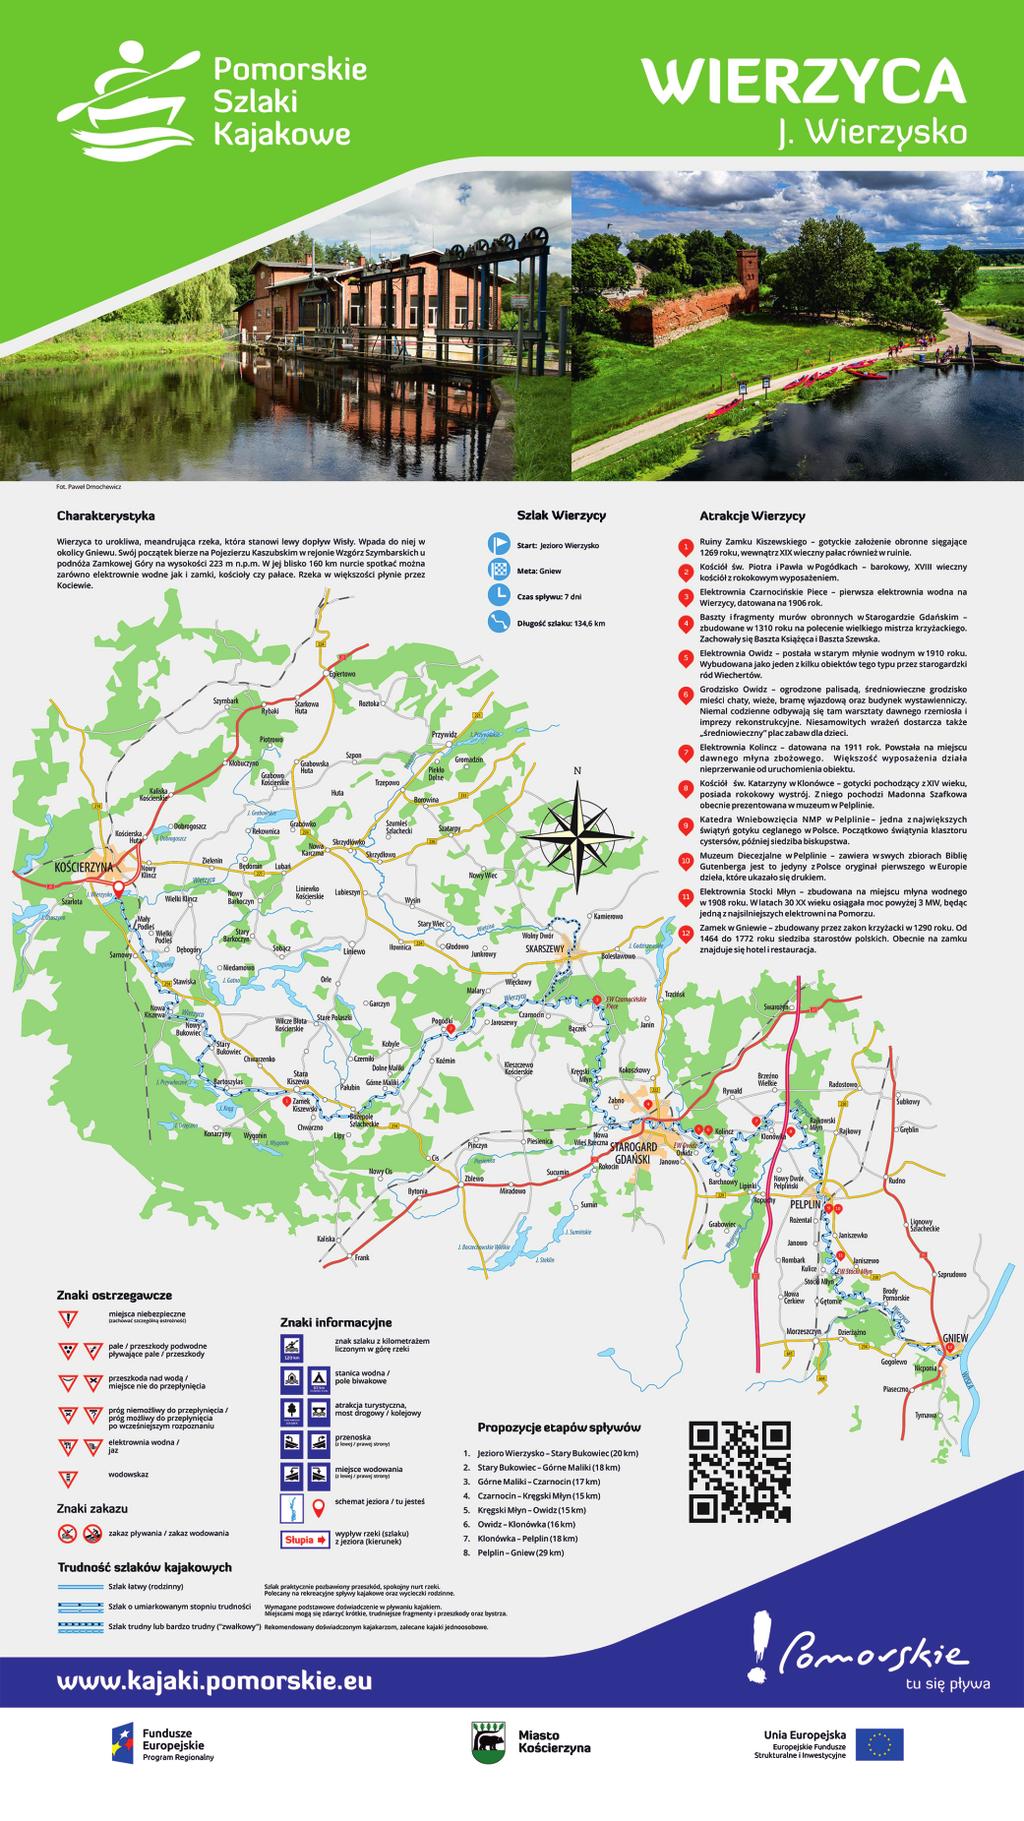 kajakowych w województwie, na drugiej - opis i mapa danego